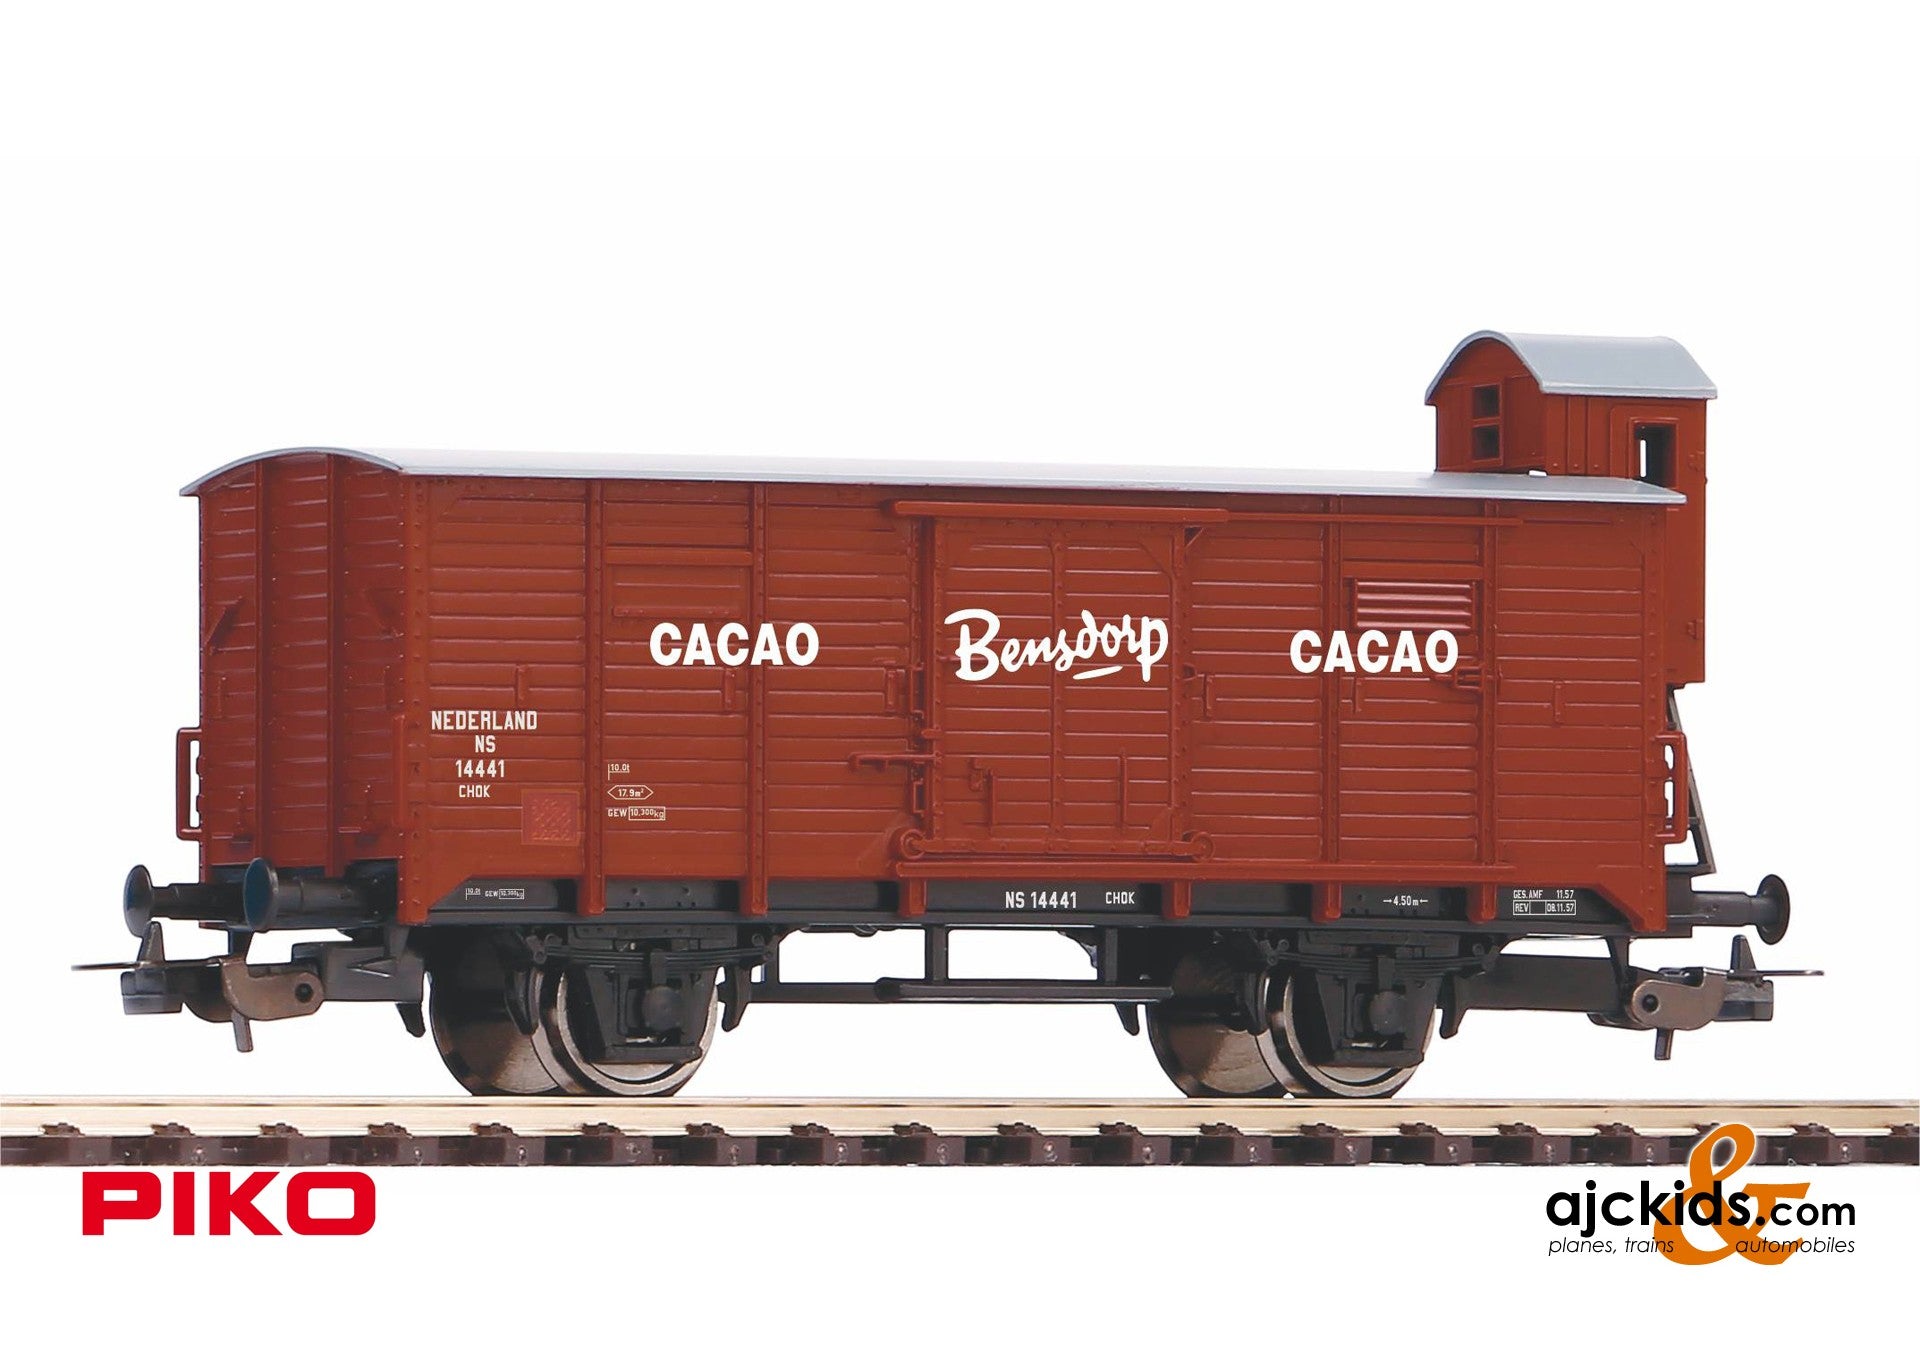 Piko 95358 - CHOK Boxcar NS Bensdorp Cacao III